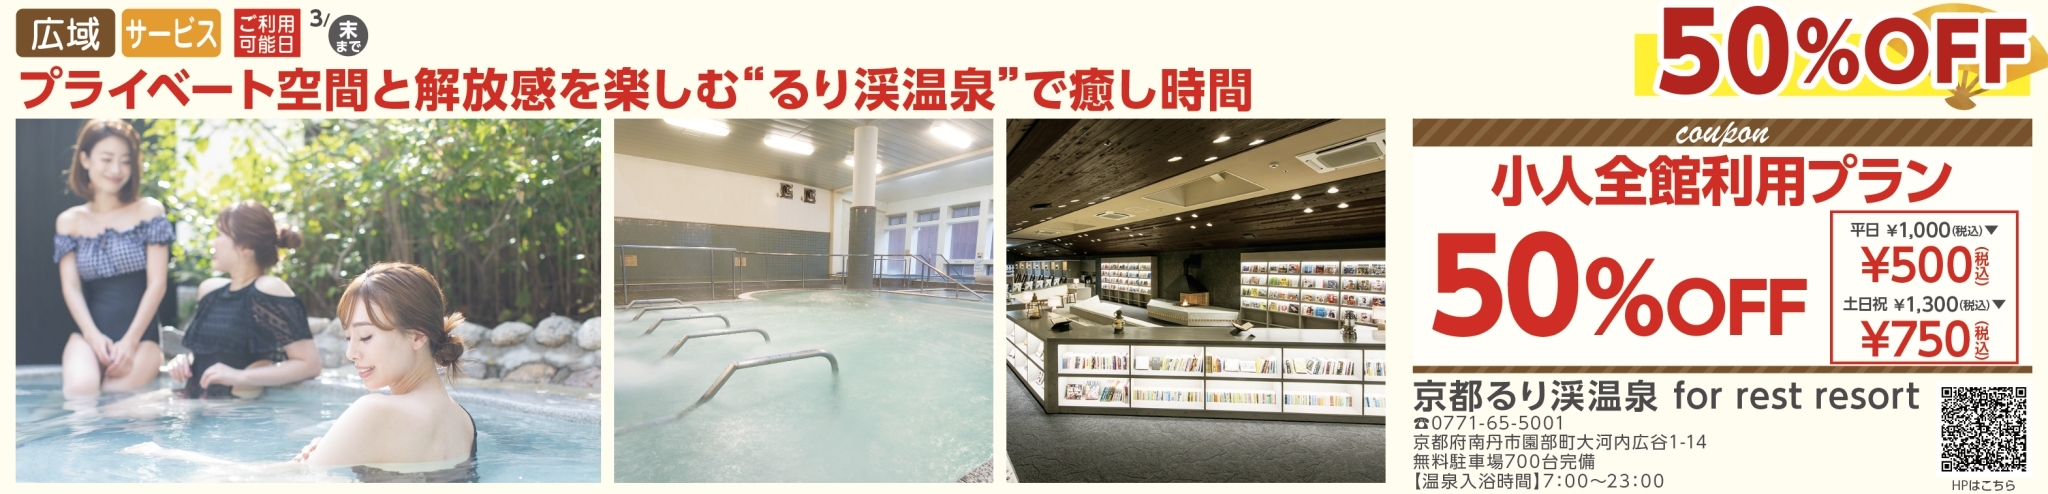 京都るり渓温泉 for rest resort